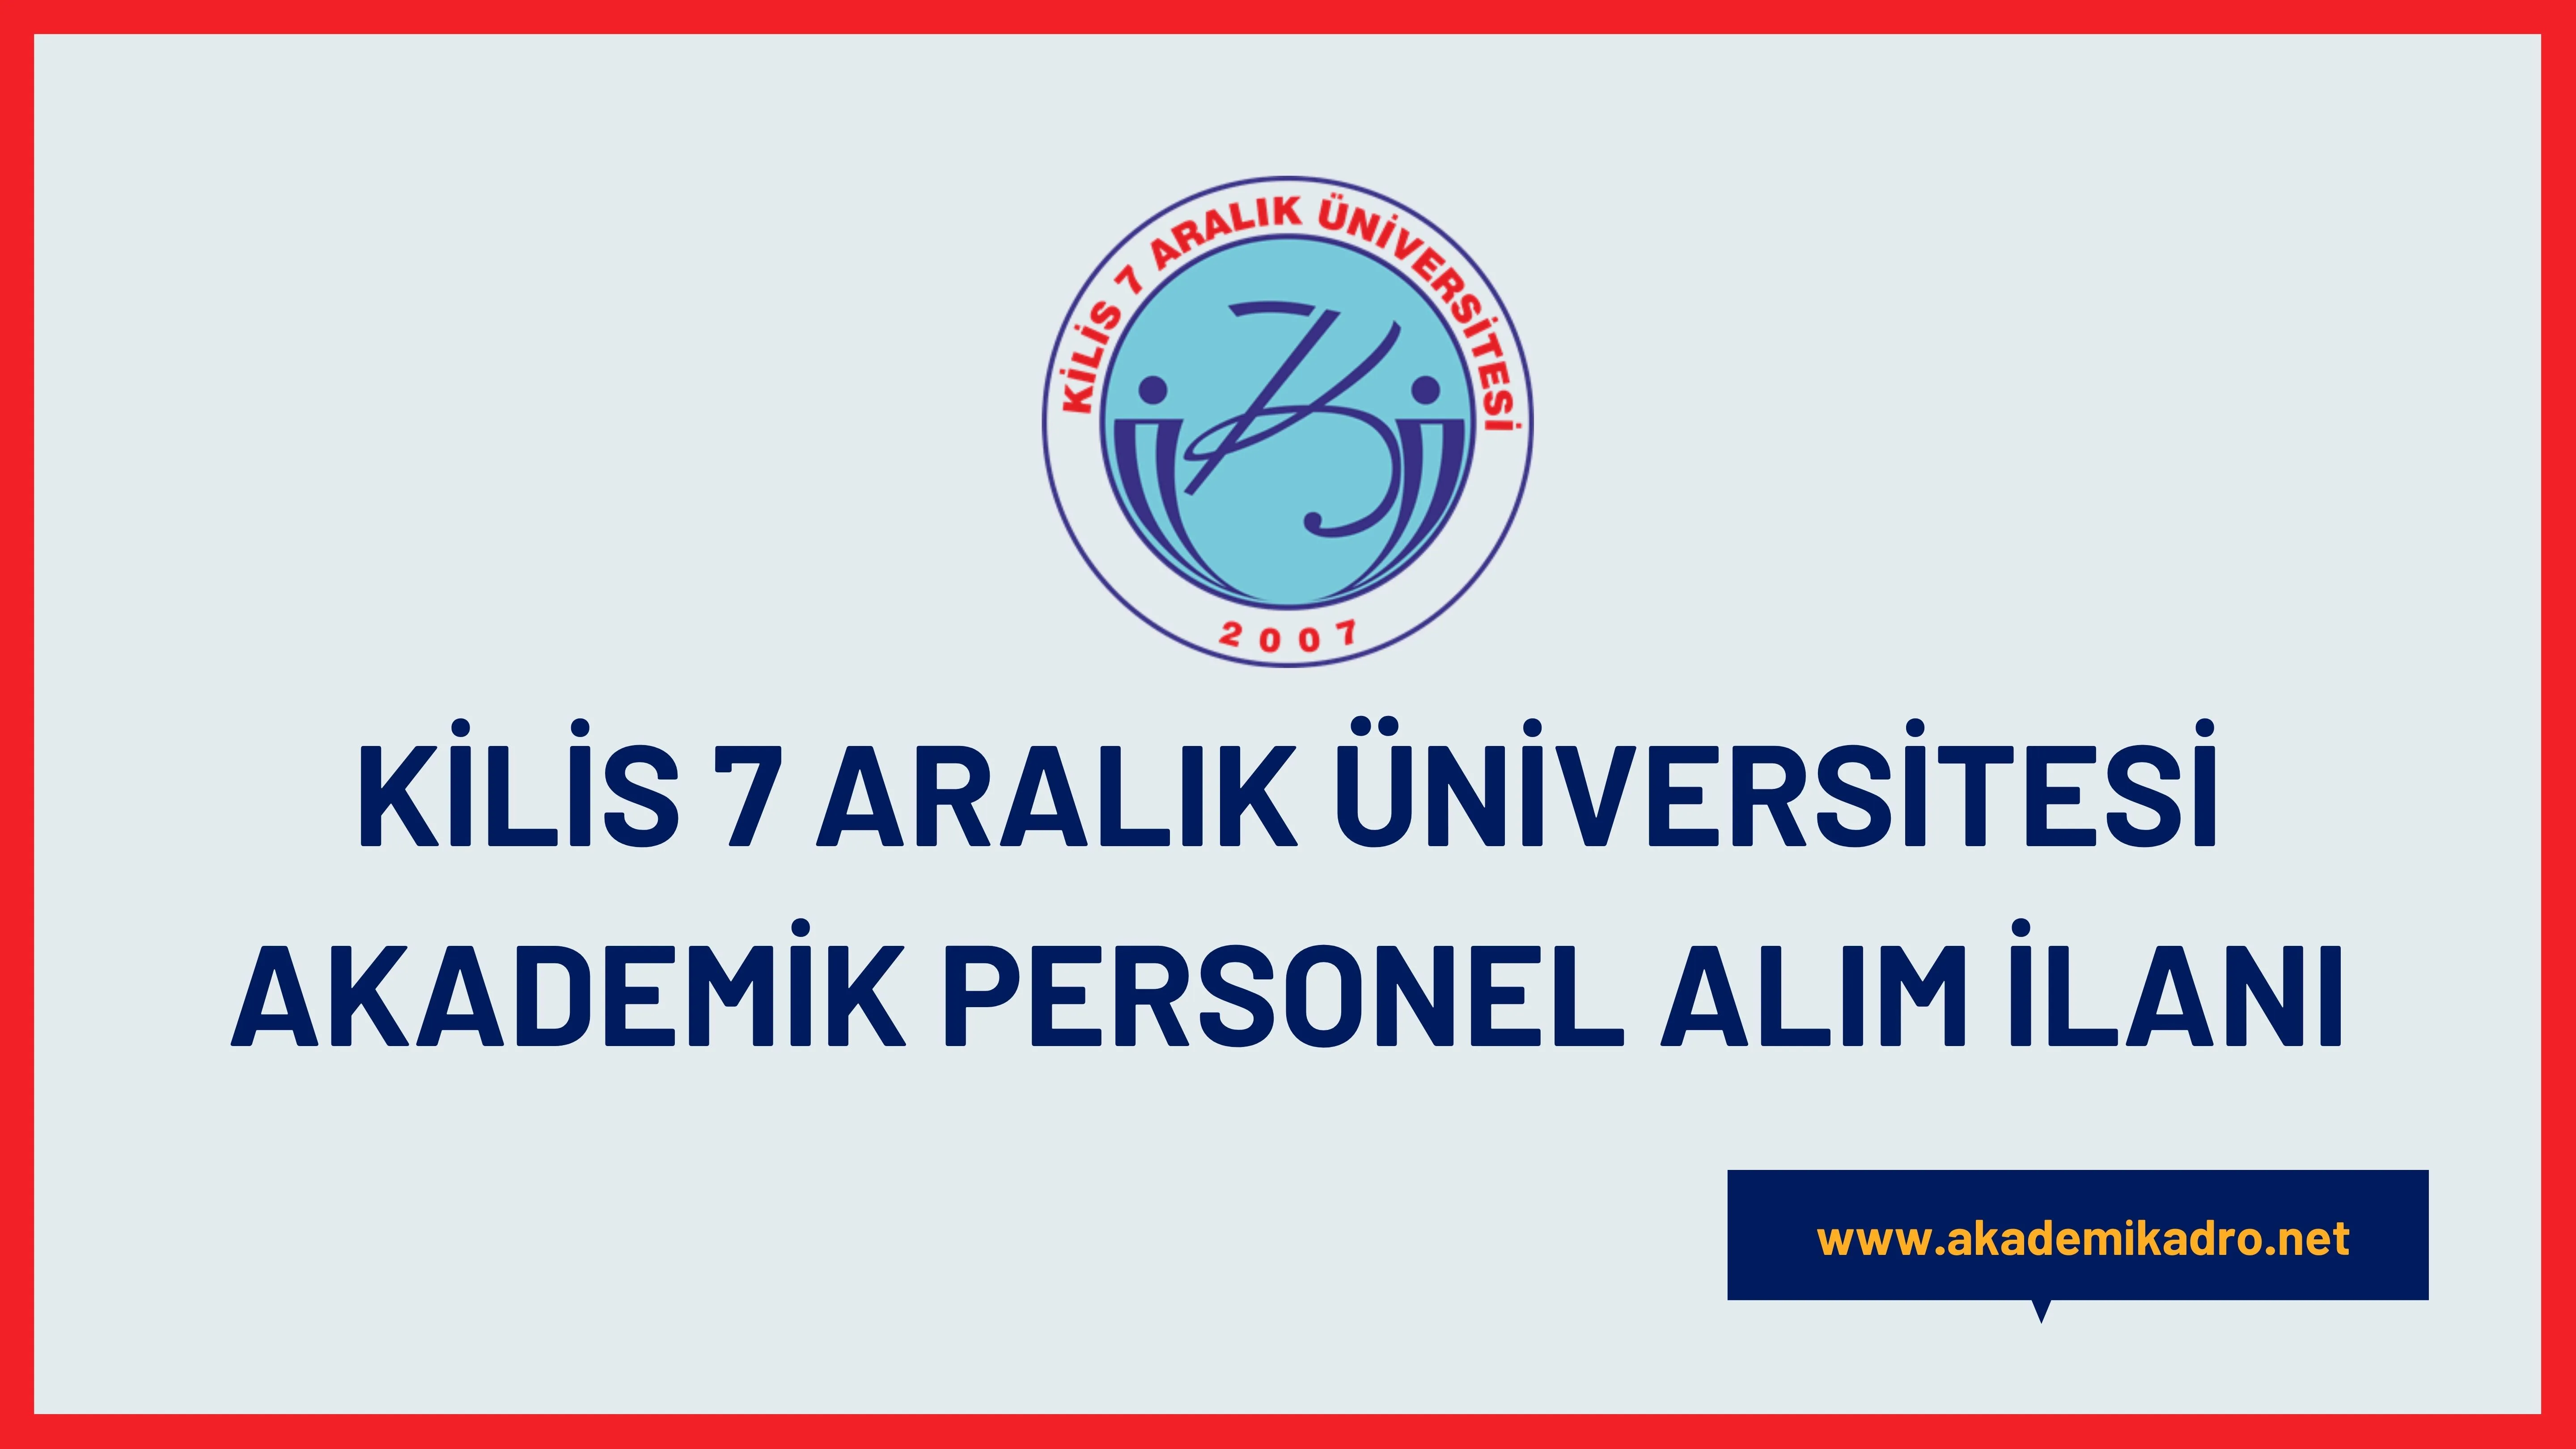 Kilis 7 Aralık Üniversitesi birçok alandan 28 Öğretim üyesi alacak.